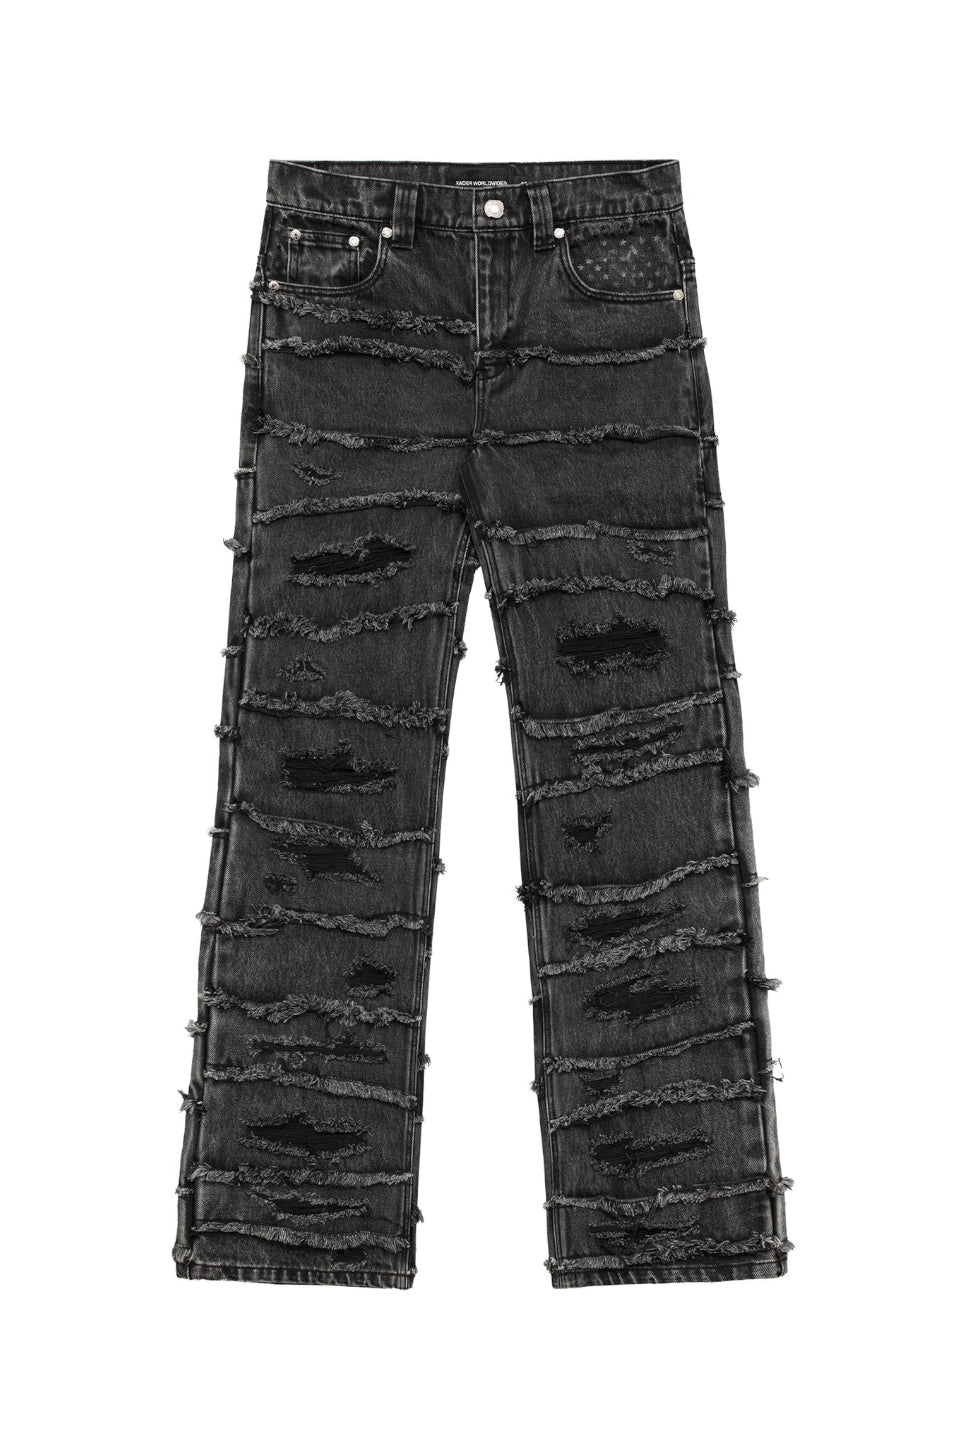 保証1年MODITEC モディテック Wave Jeans デニム パンツ パンツ